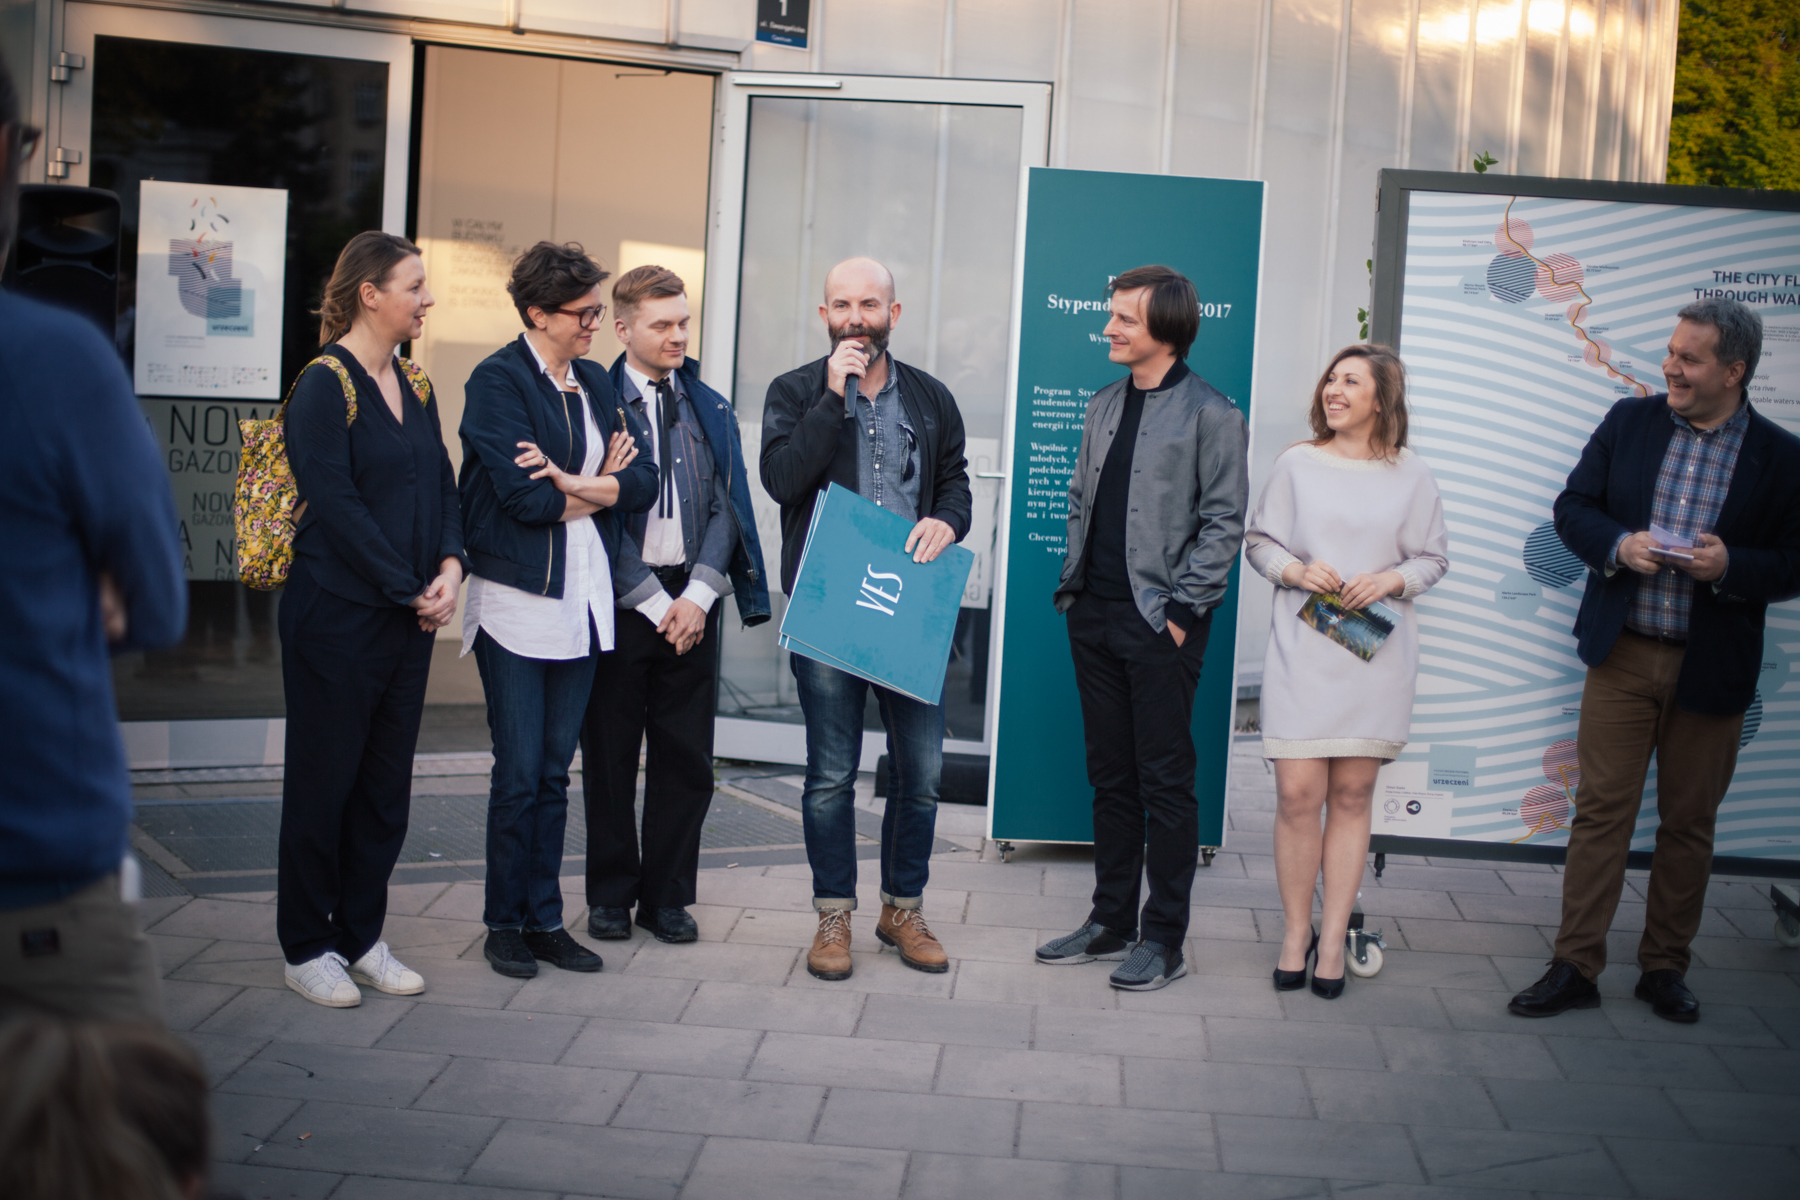 Prace oceniało jury w składzie (od lewej): Magda Dąbrowska, Kasia Bukowska, Krzysztof Stróżyna, Wojciech Trzcionka (przewodniczący) i Oskar Zięta. Obok Zięty Andżelika Jabłońska, organizatorka Poznań Design Festiwal.